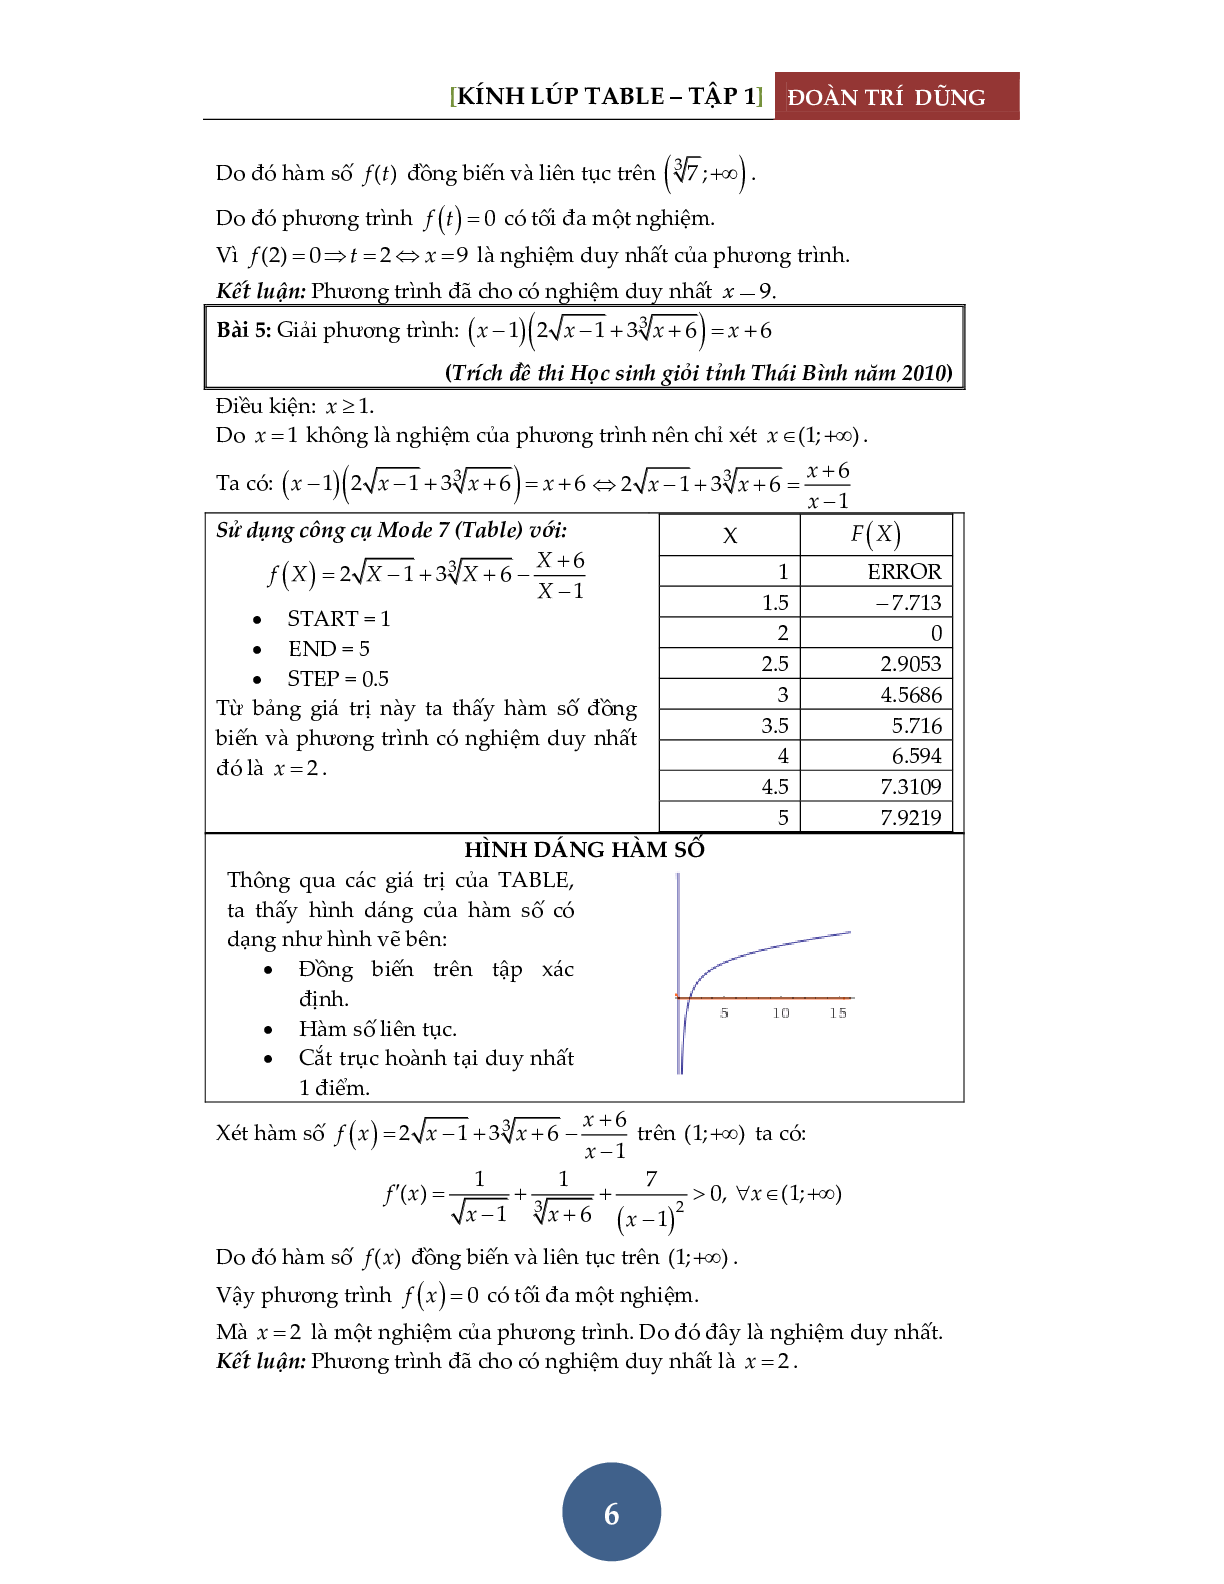 Giải phương trình bằng máy tính Casio – Đánh giá hàm đơn điệu (trang 7)